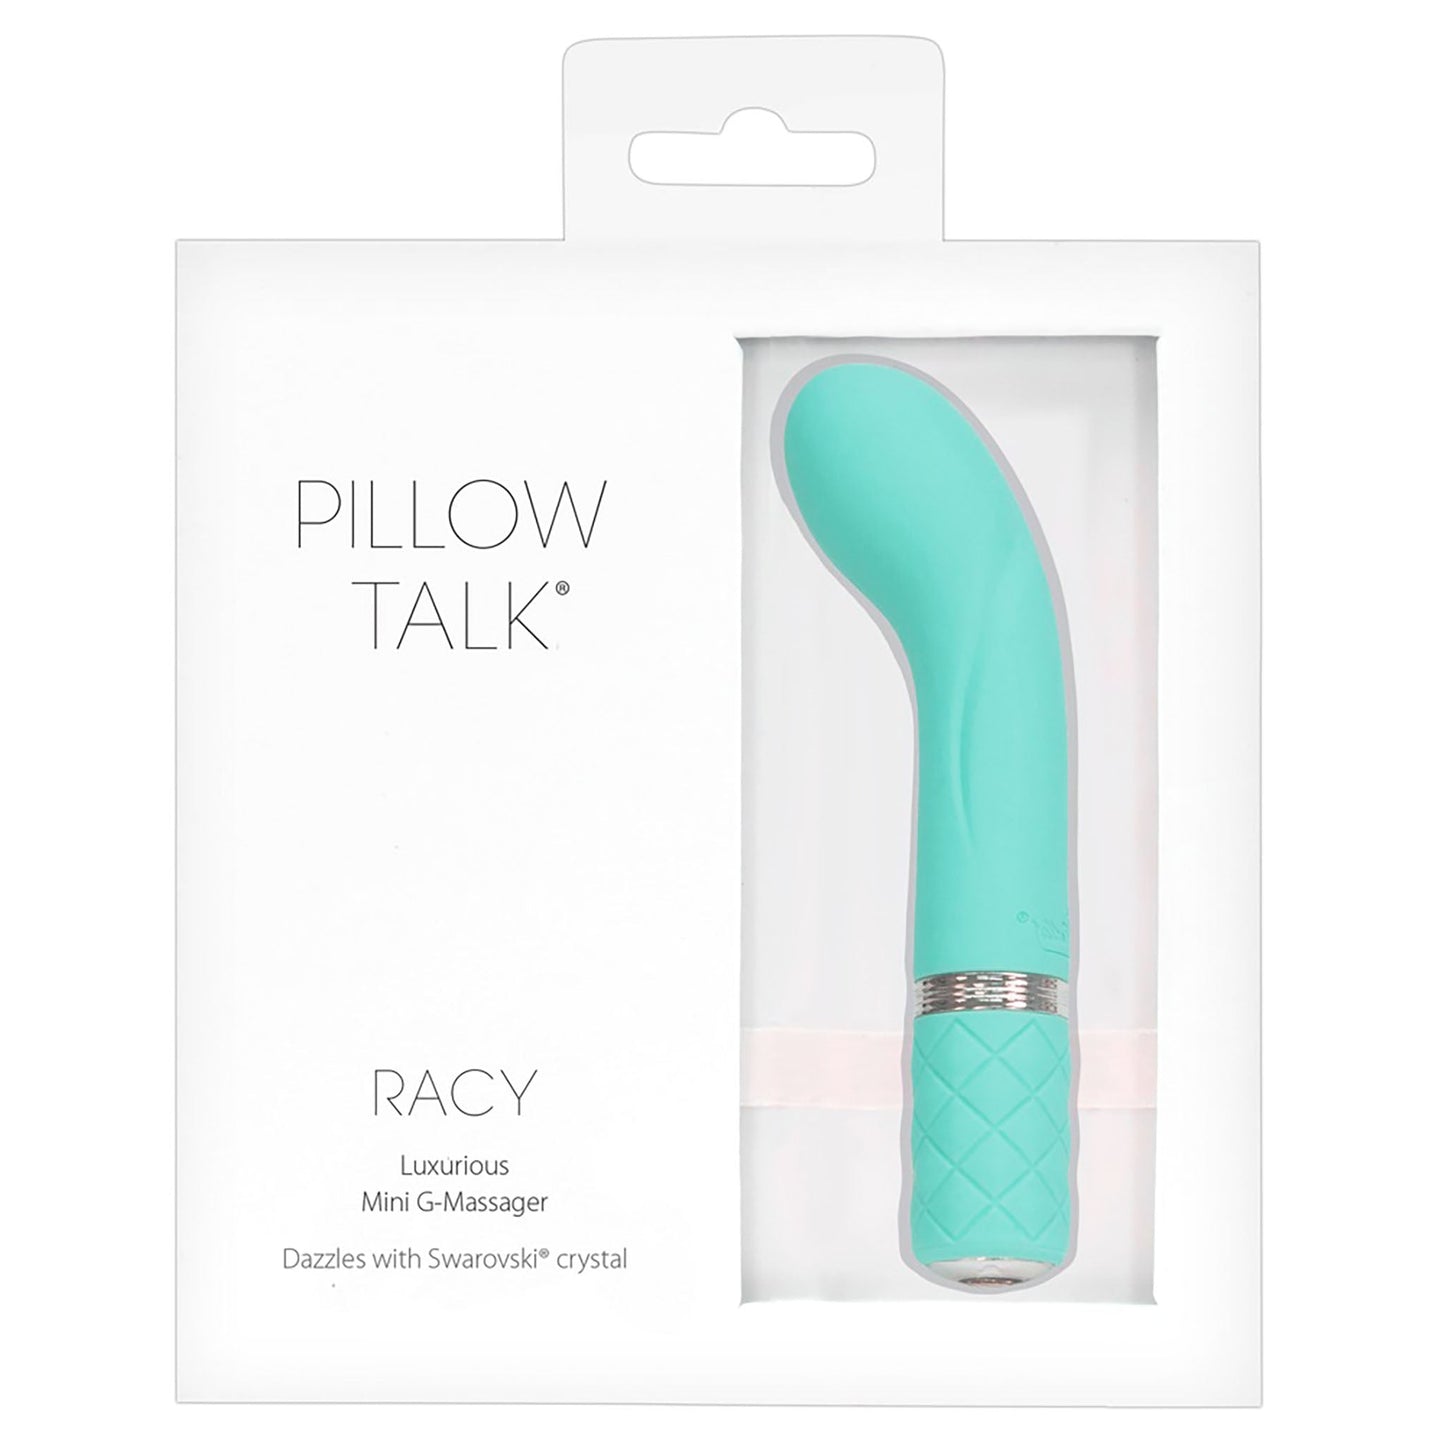 Racy Luxurius Mini Massager von Pillow Talk, ein G-Punkt Vibrator in türkis in Verpackung